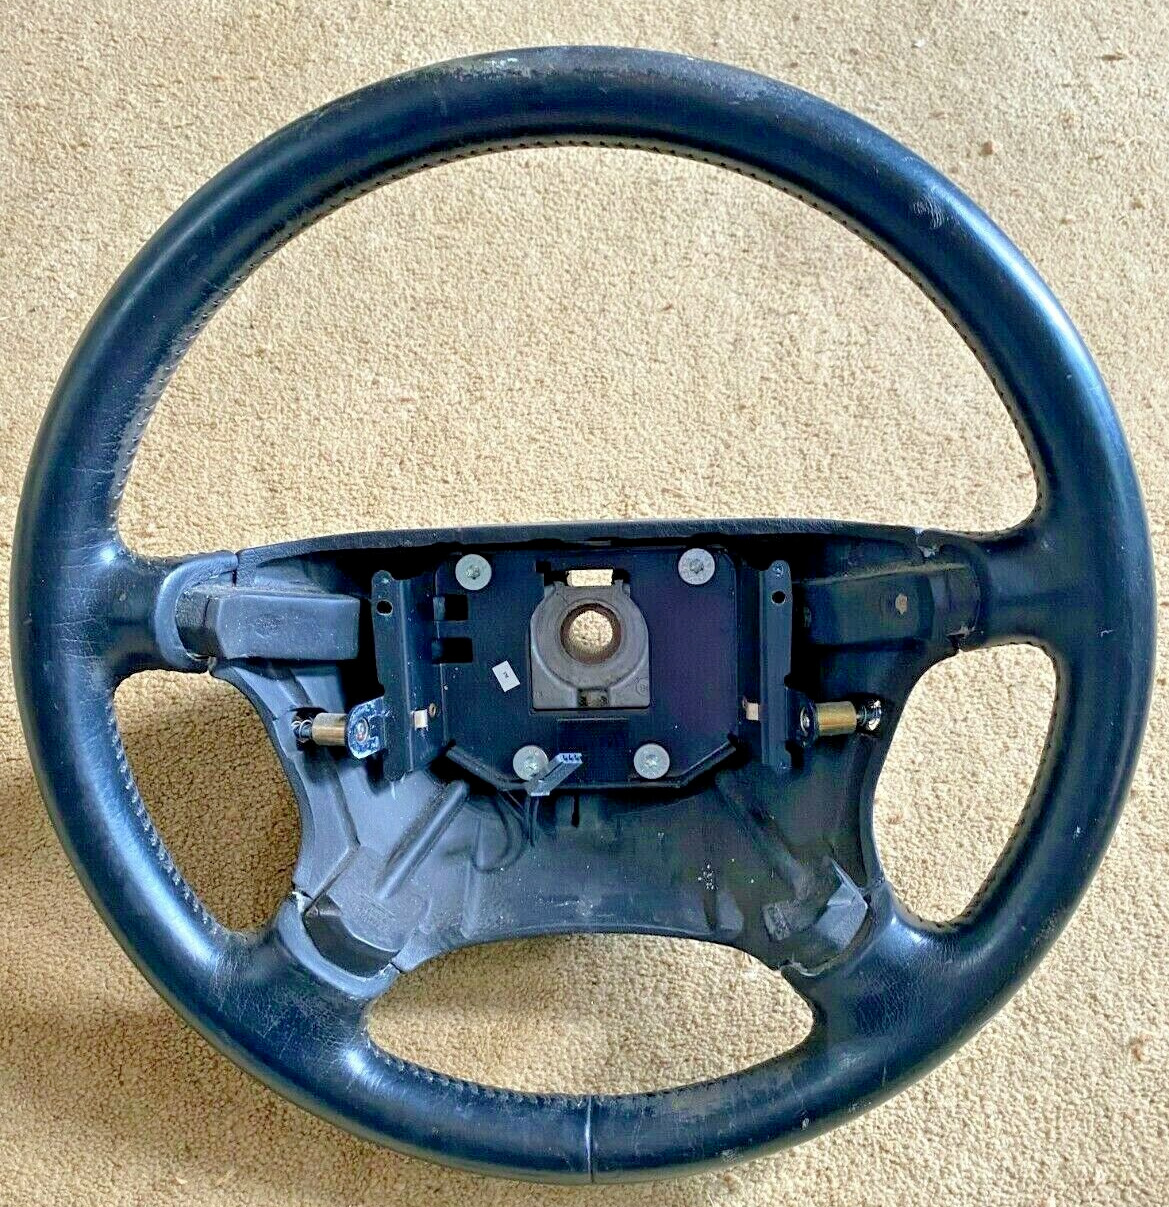 Steering Wheel. Saab 900 1998, 9-3 & 9-5